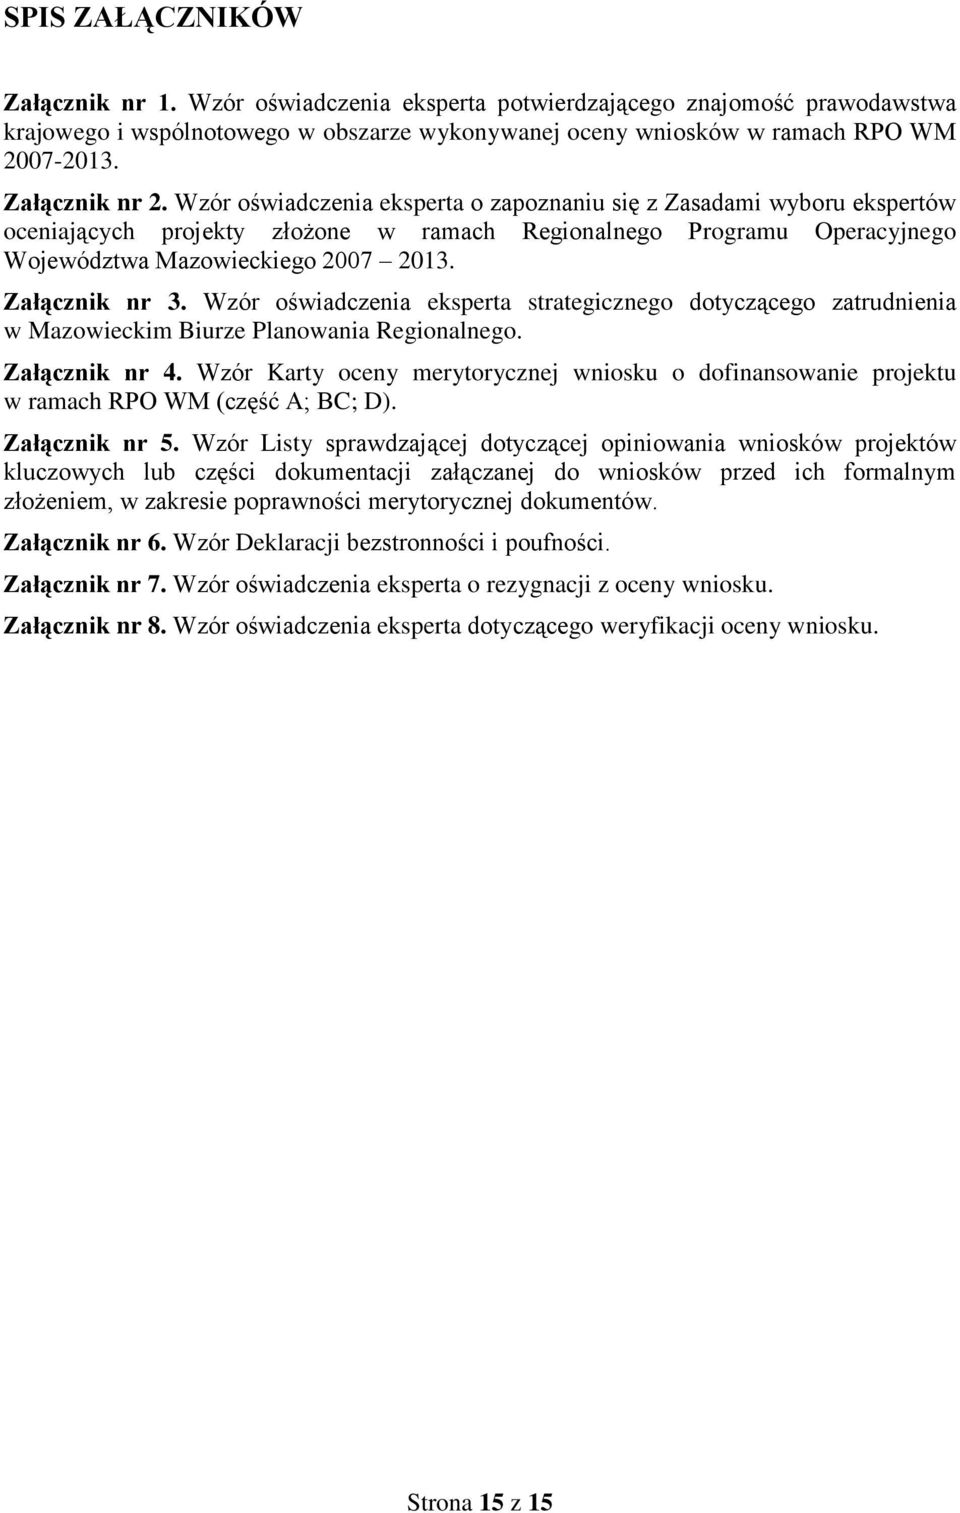 Załącznik nr 3. Wzór oświadczenia eksperta strategicznego dotyczącego zatrudnienia w Mazowieckim Biurze Planowania Regionalnego. Załącznik nr 4.